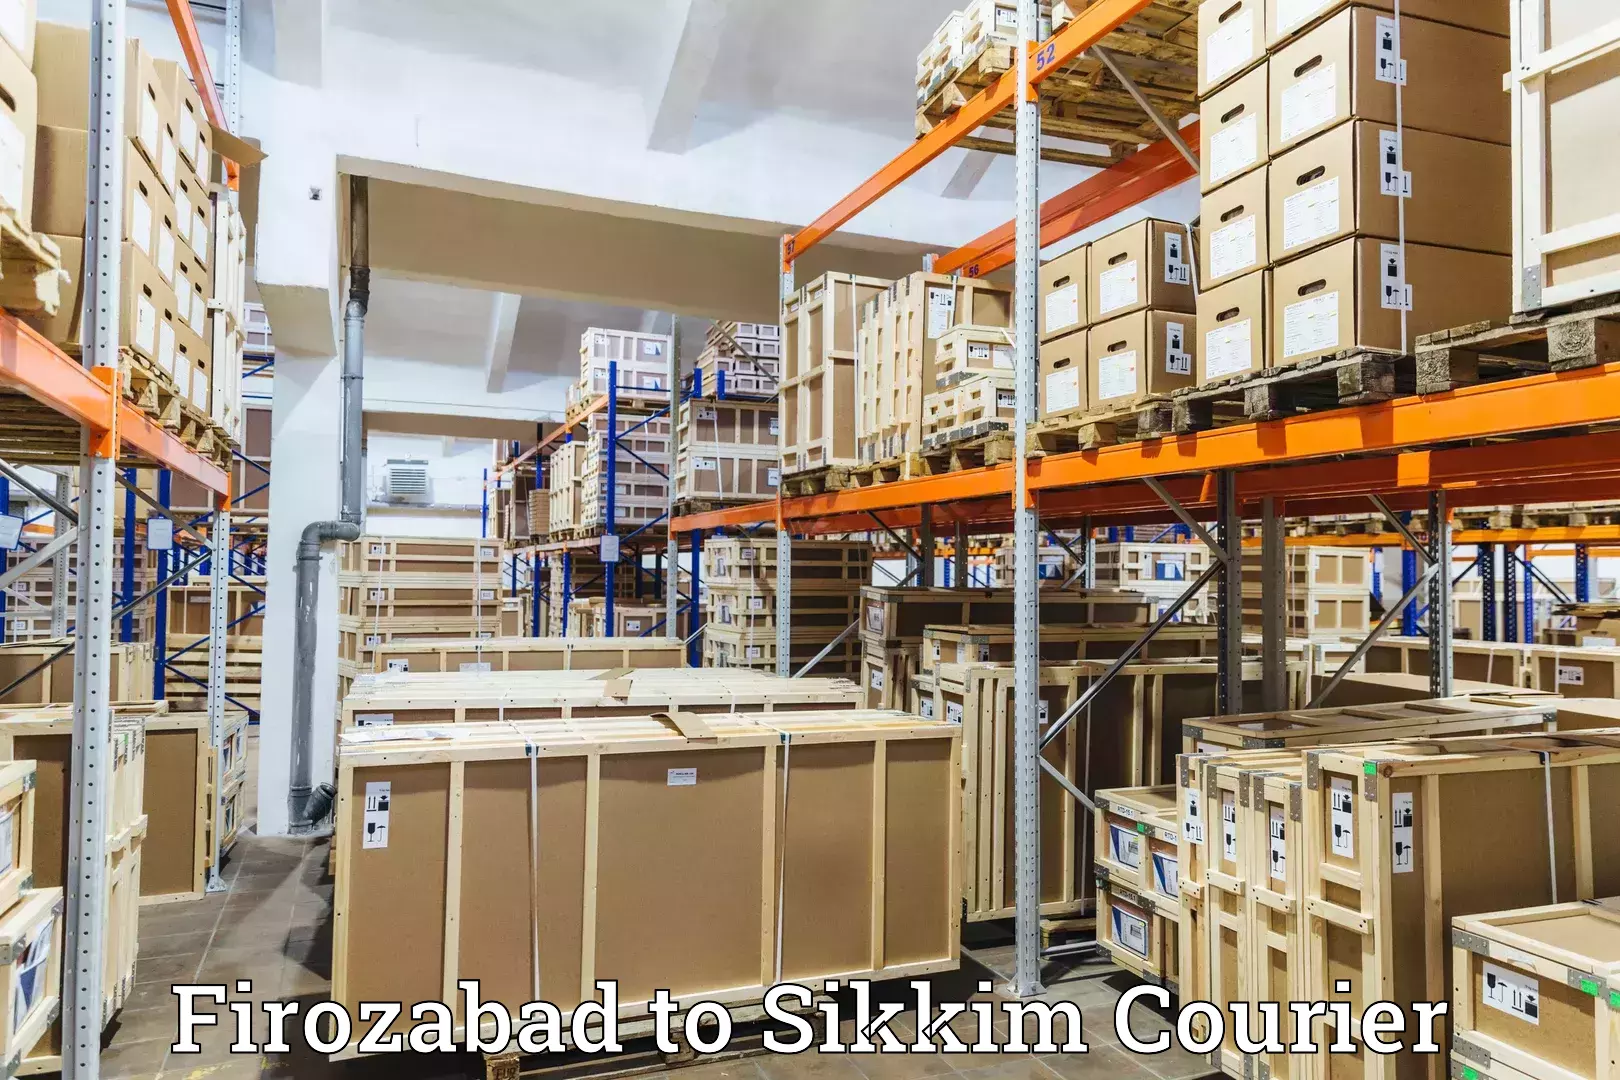 Lightweight parcel options Firozabad to West Sikkim